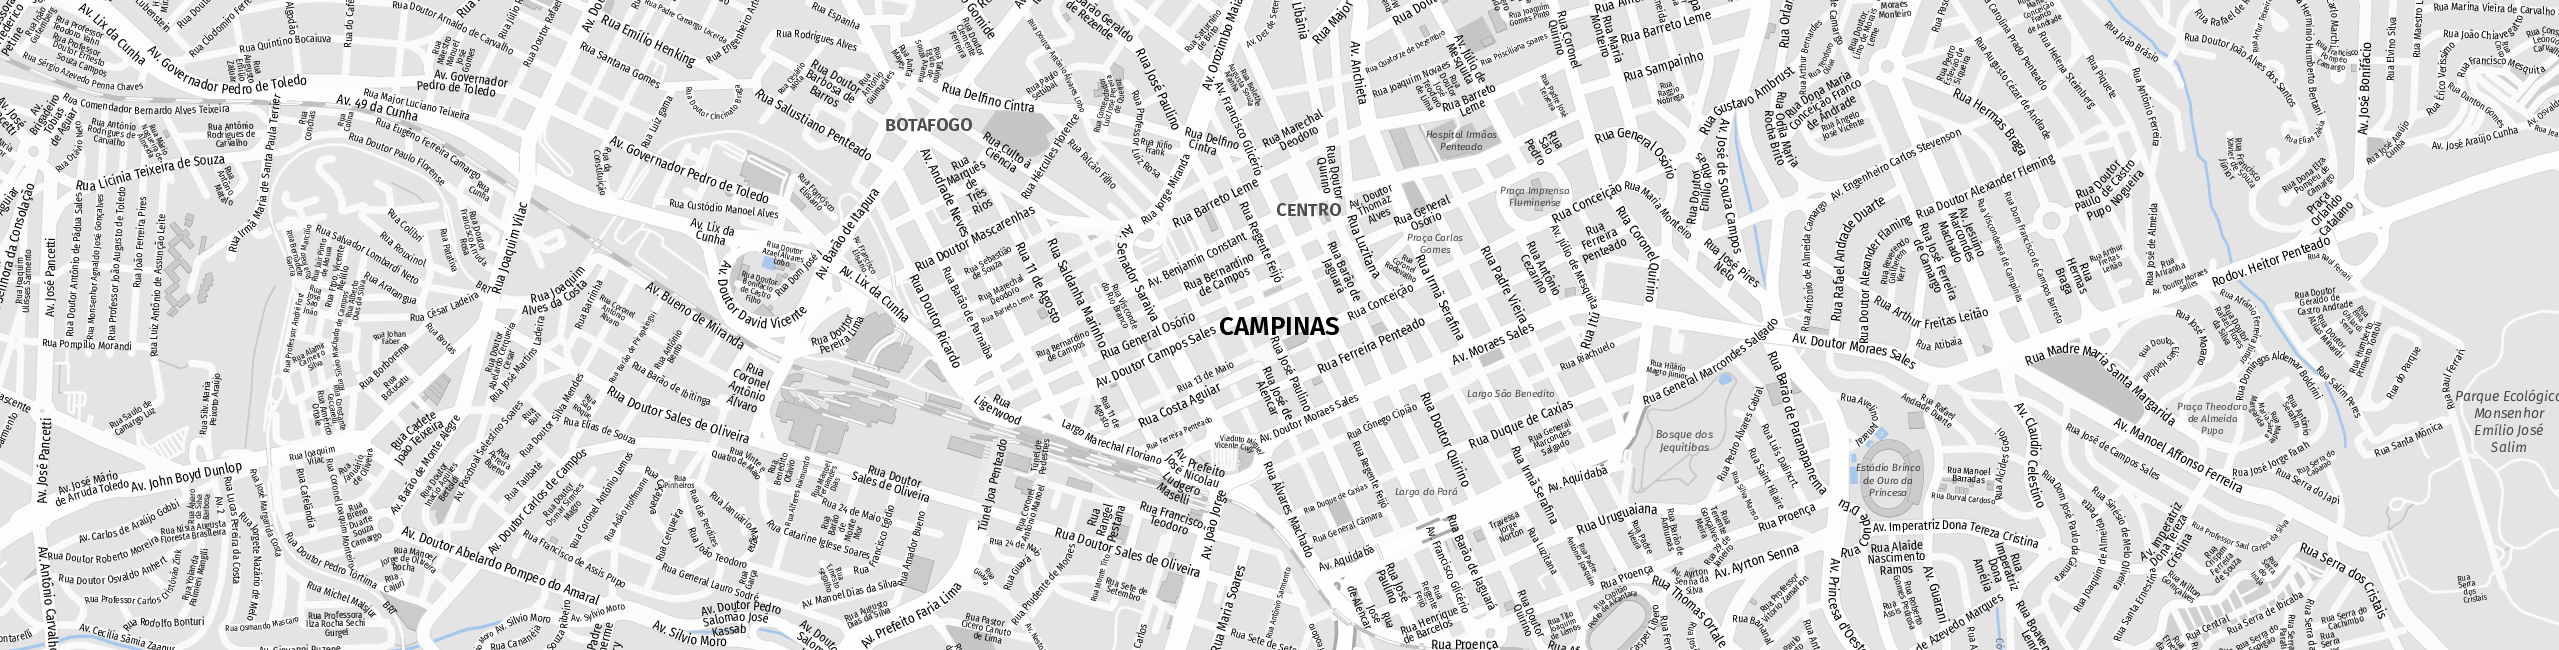 Stadtplan Campinas zum Downloaden.